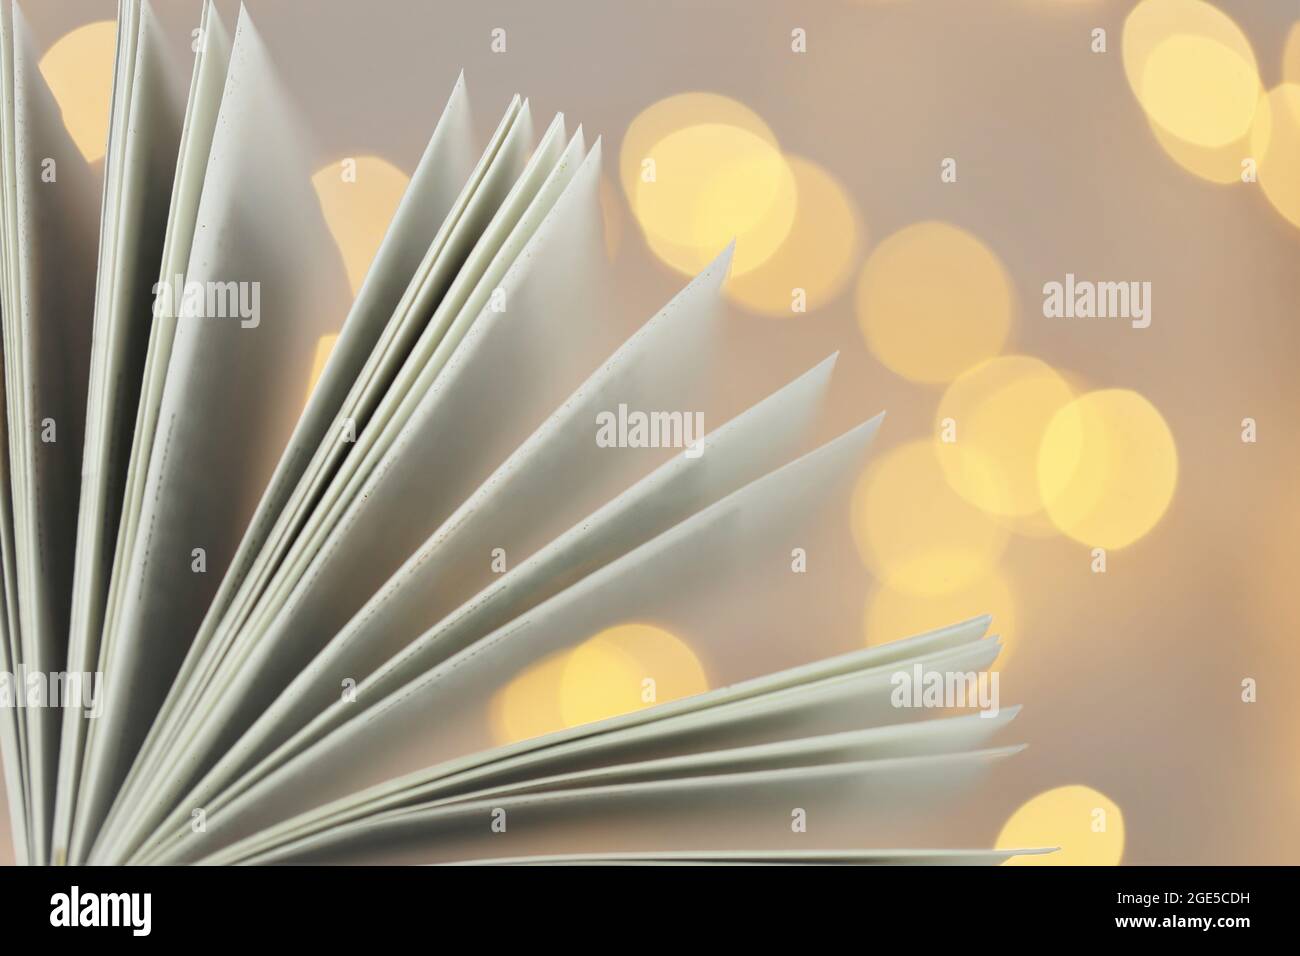 Leggere libri. Pagine del libro primo piano su bokeh lupling background.Winter libri. Foto Stock